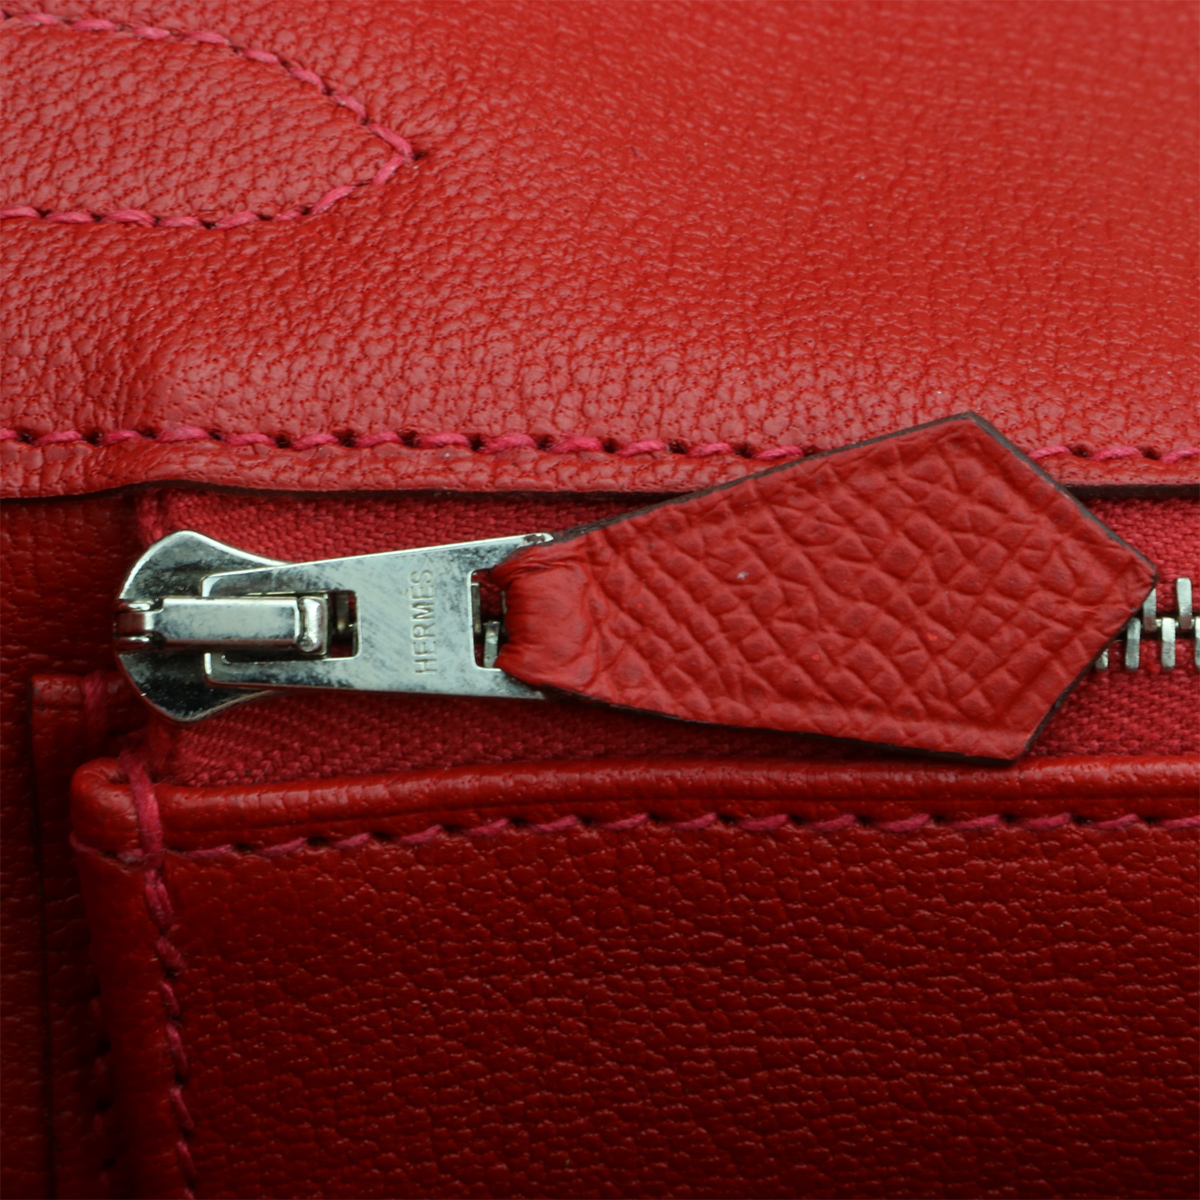 Hermès Birkin 30 Rouge Casaque Epsom Palladium Hardware PHW — The